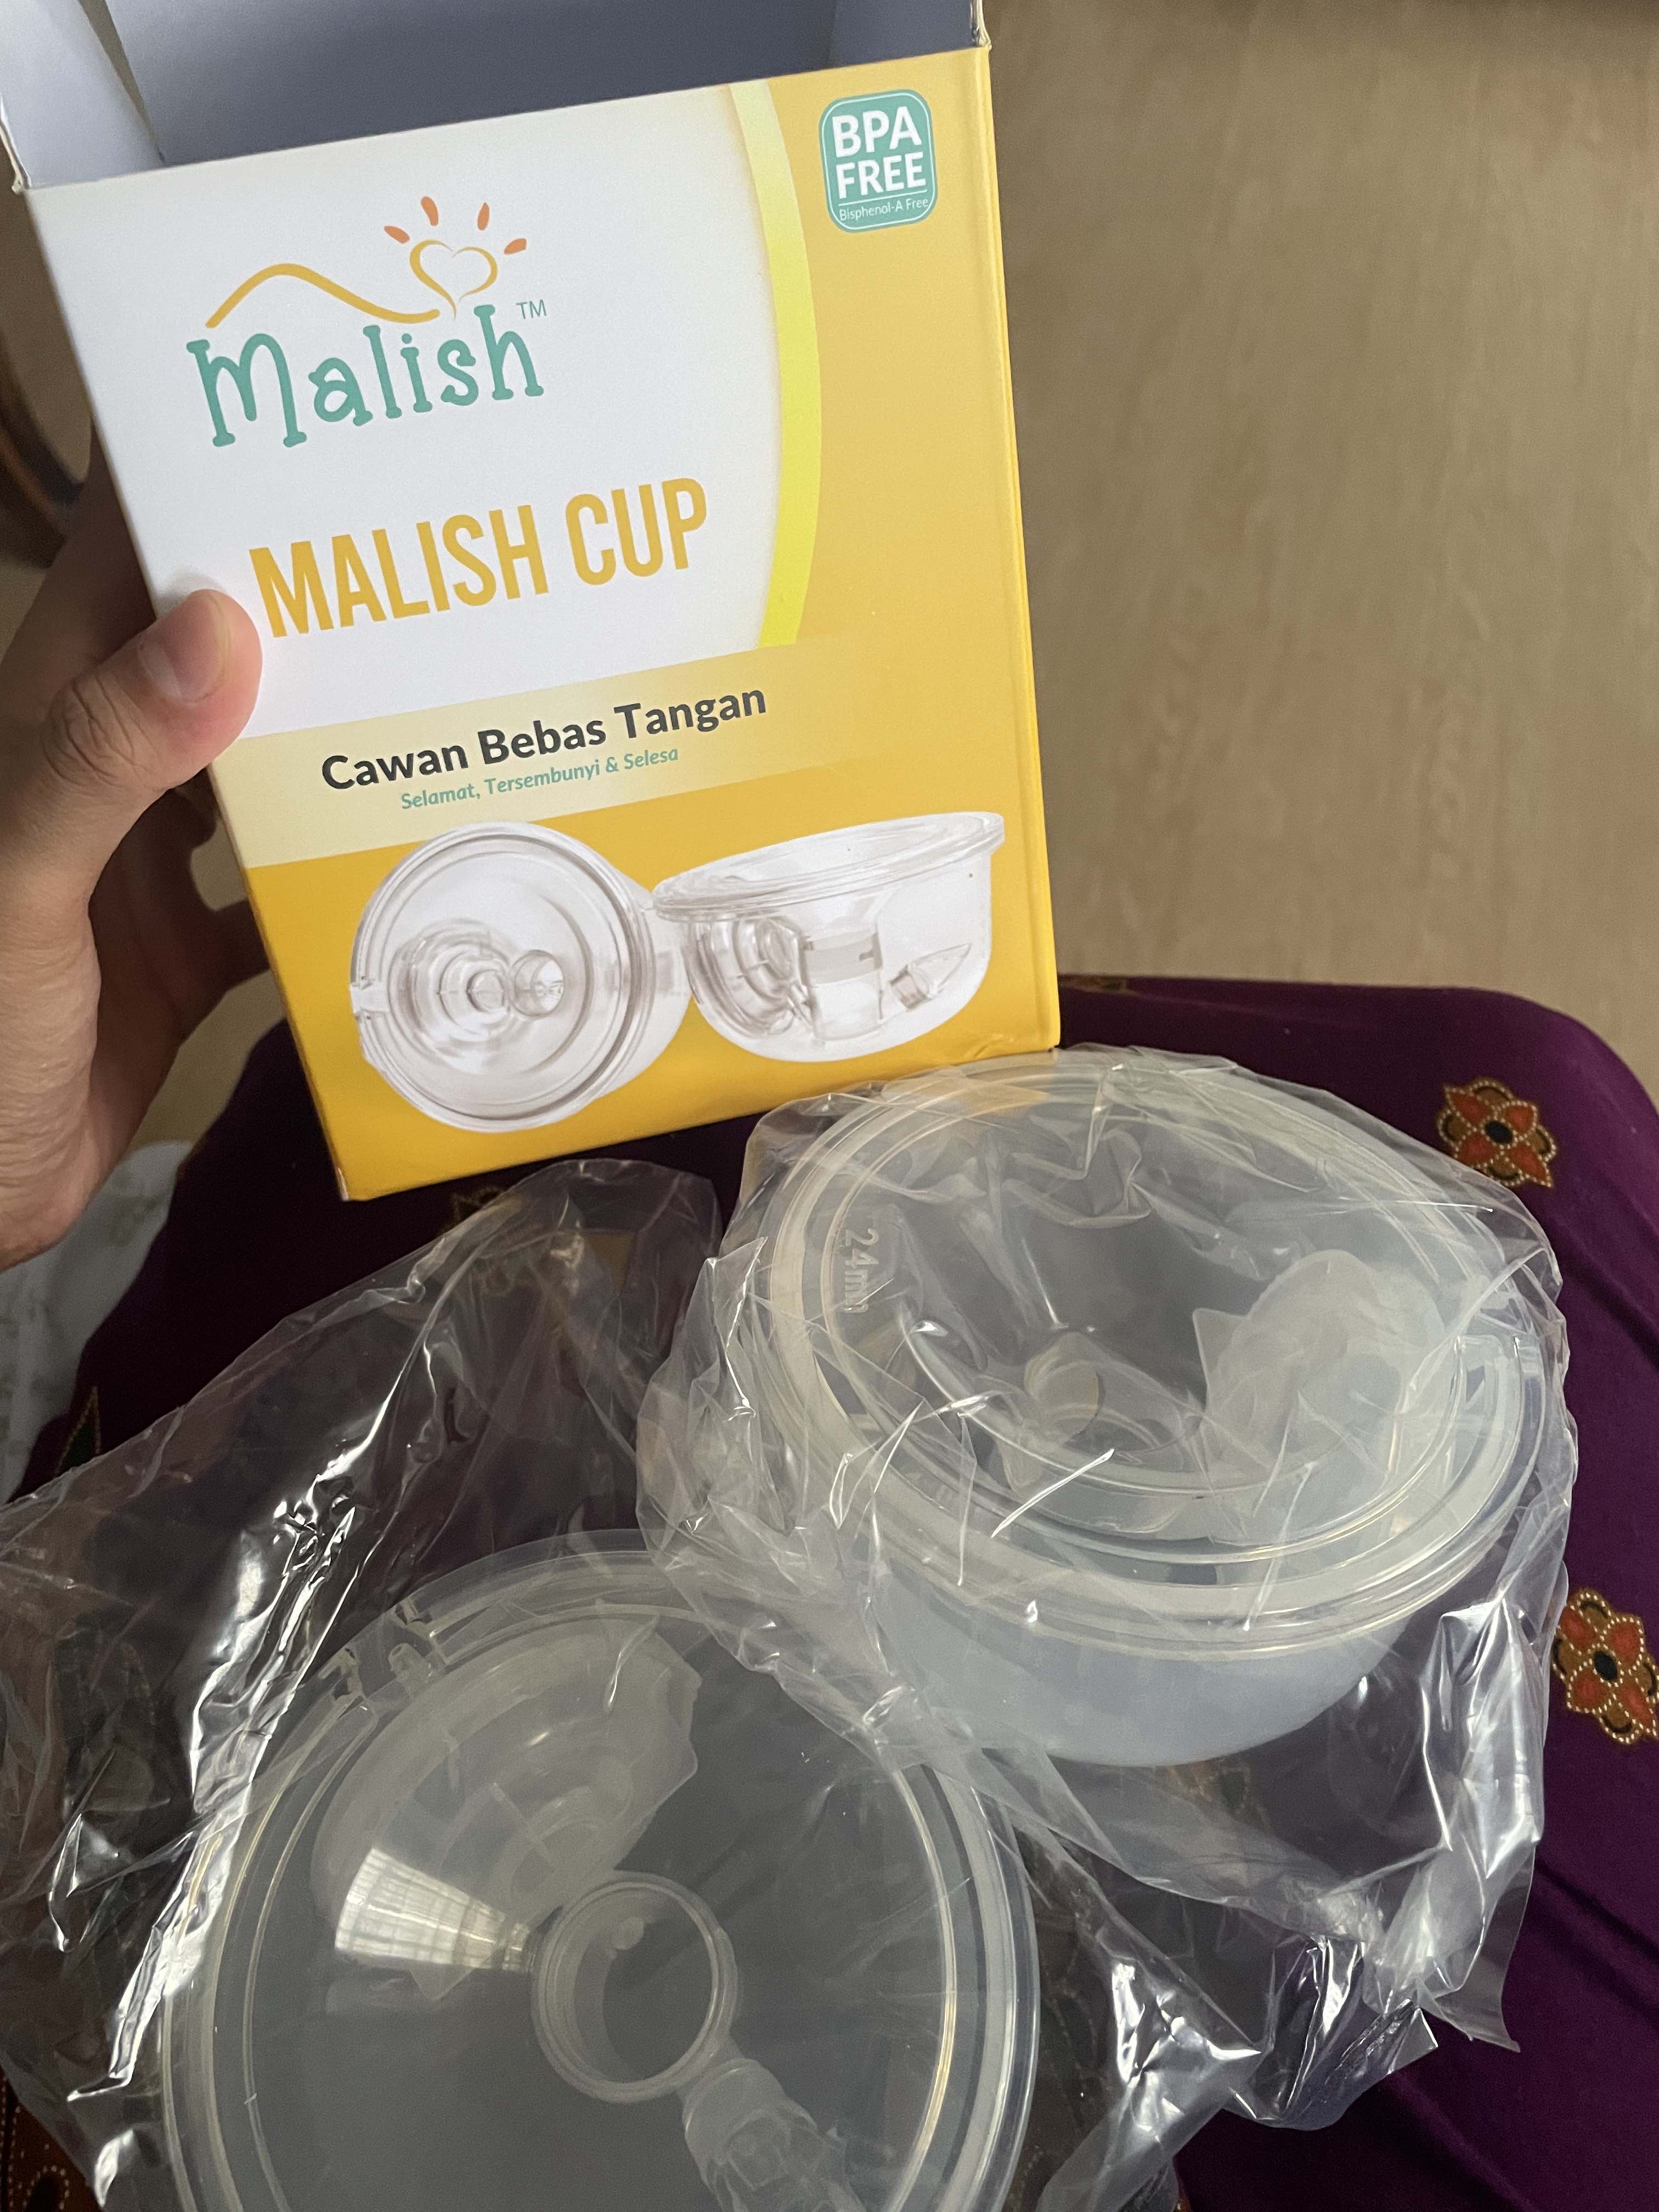 Malish – Handsfree Cup Set